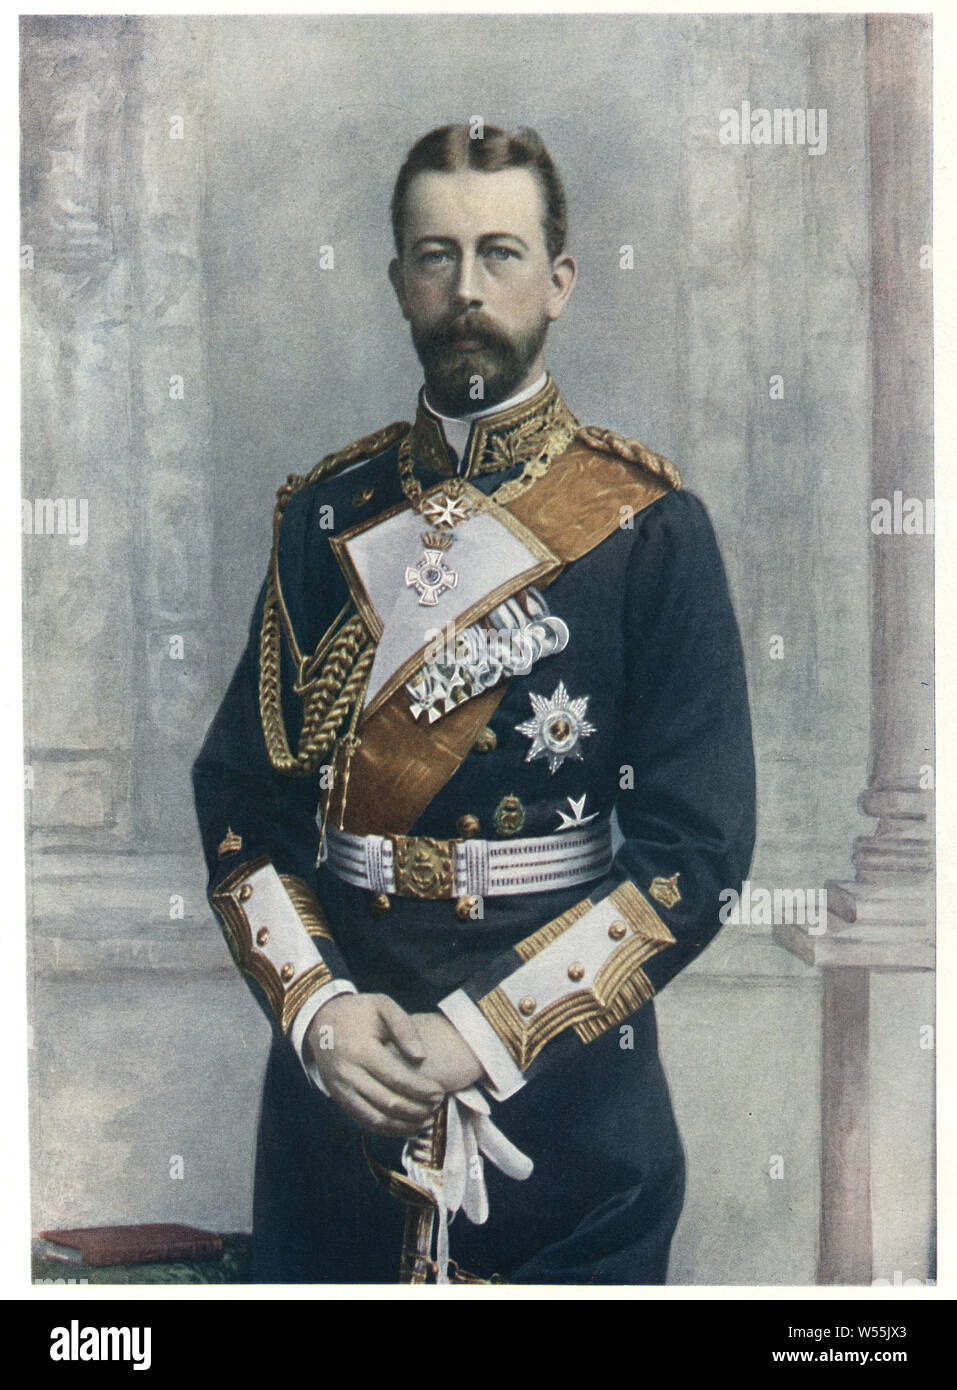 Il Principe Enrico di Prussia un fratello più giovane dell'imperatore tedesco Guglielmo II e un principe di Prussia. Foto Stock